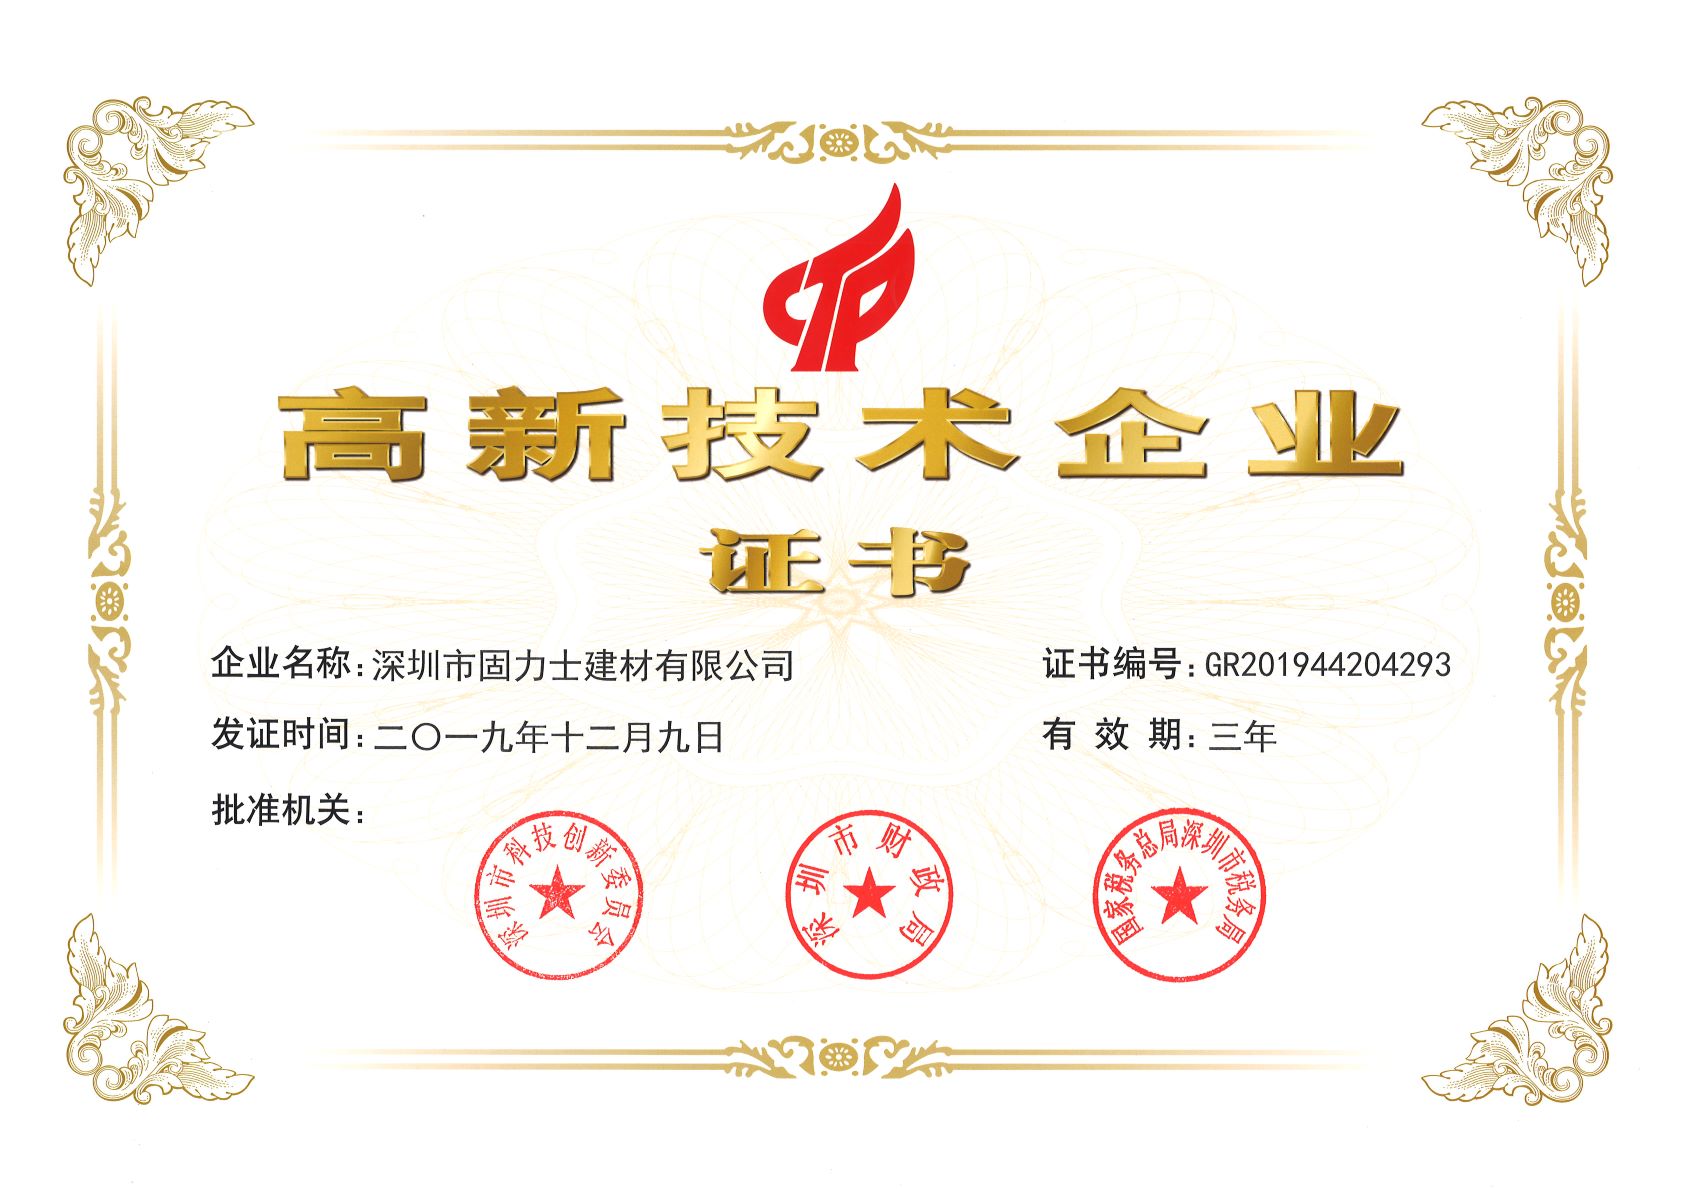 本溪热烈祝贺深圳市固力士建材有限公司通过高新技术企业认证